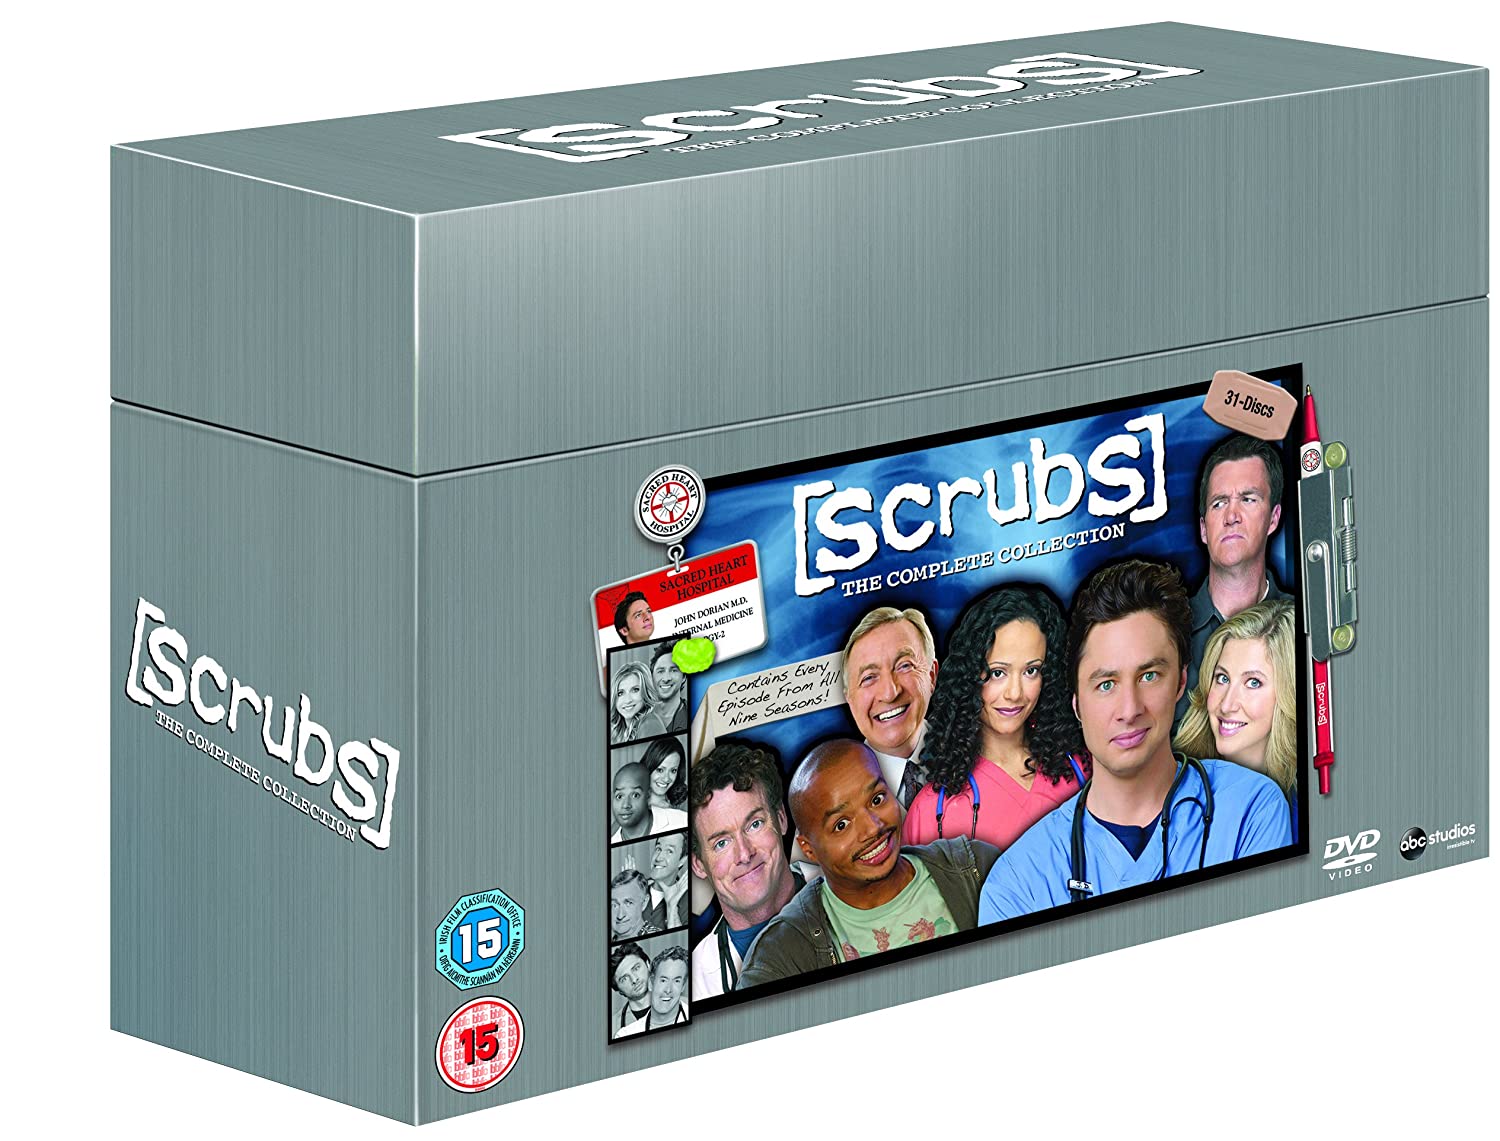 Scrubs The Complete Collection (Dvd Box) [Edizione: Paesi Bassi] [Edizione: Regno Unito]